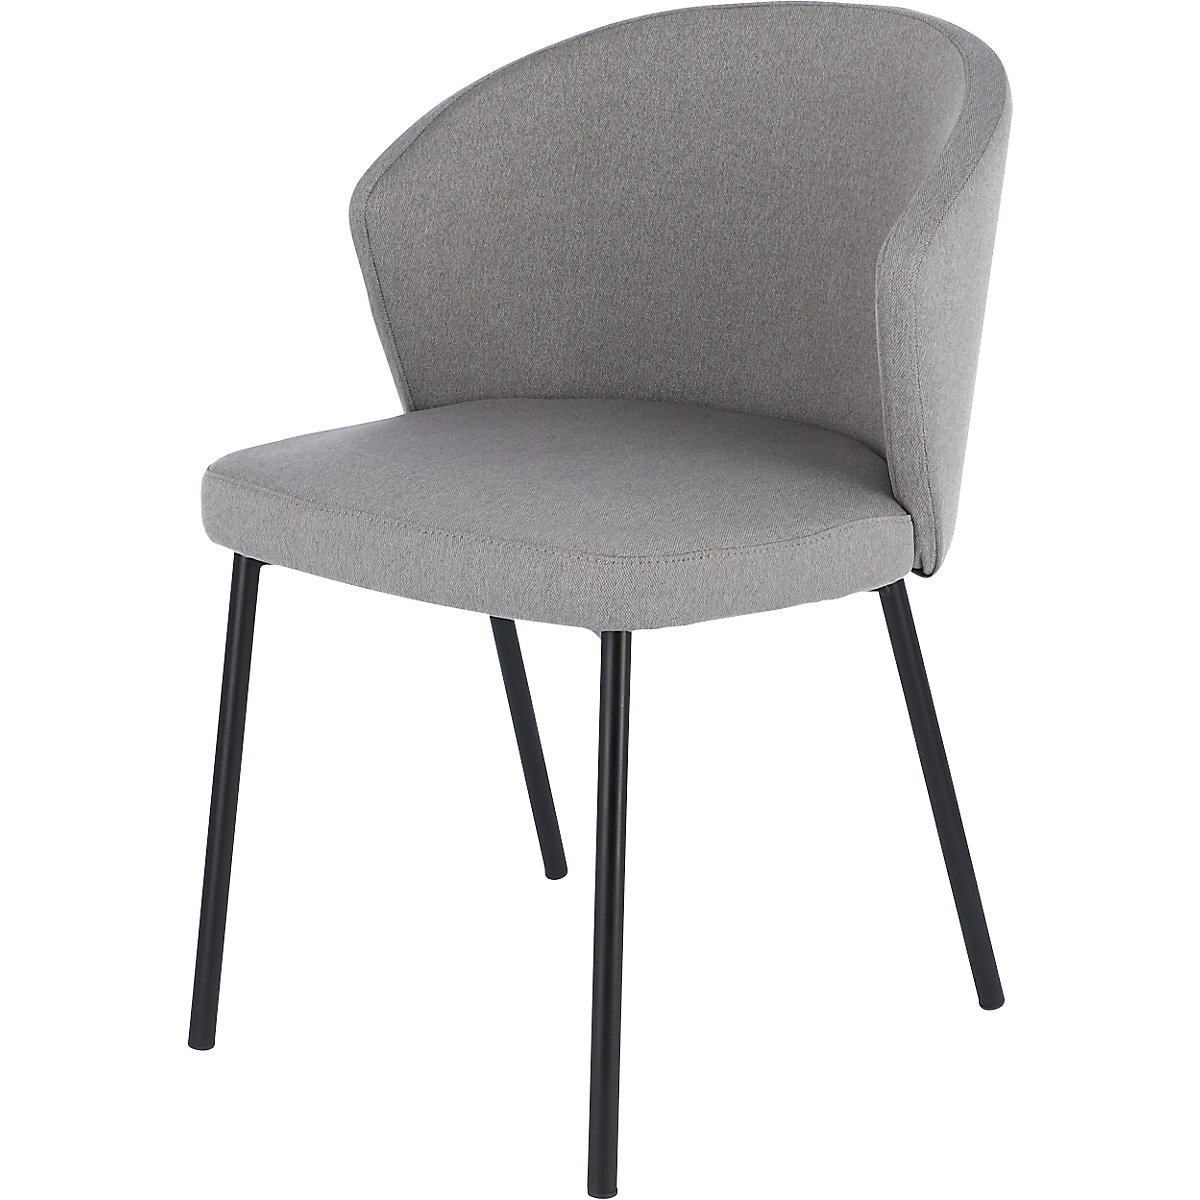 Multifunctionele stoel MILA, frame van staalbuis zwart, lichtgrijs-8